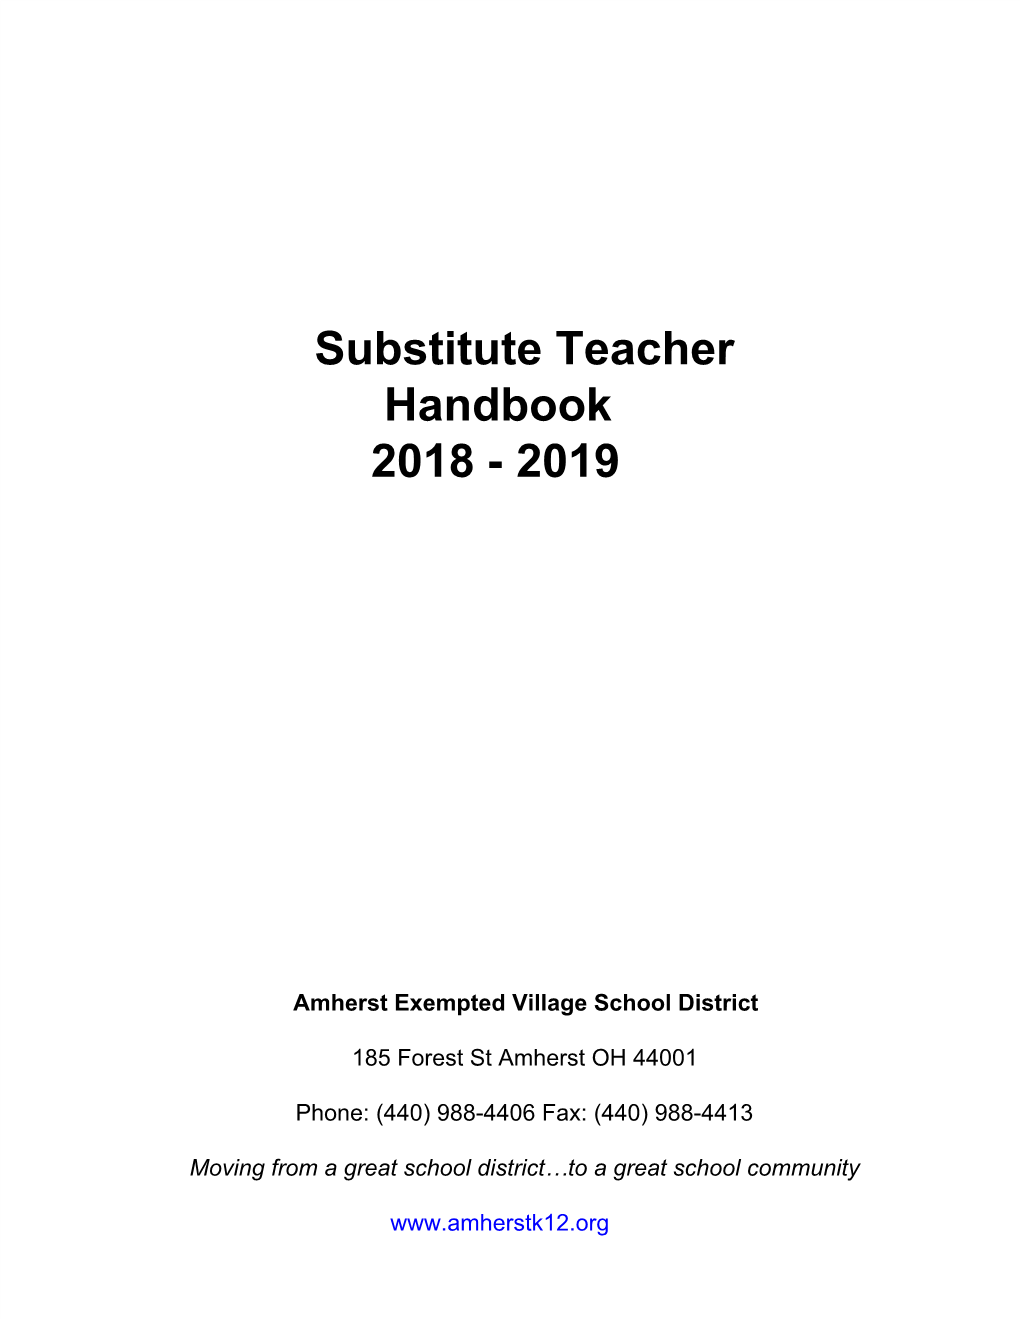 Substitute Teacher Handbook 2018 - 2019